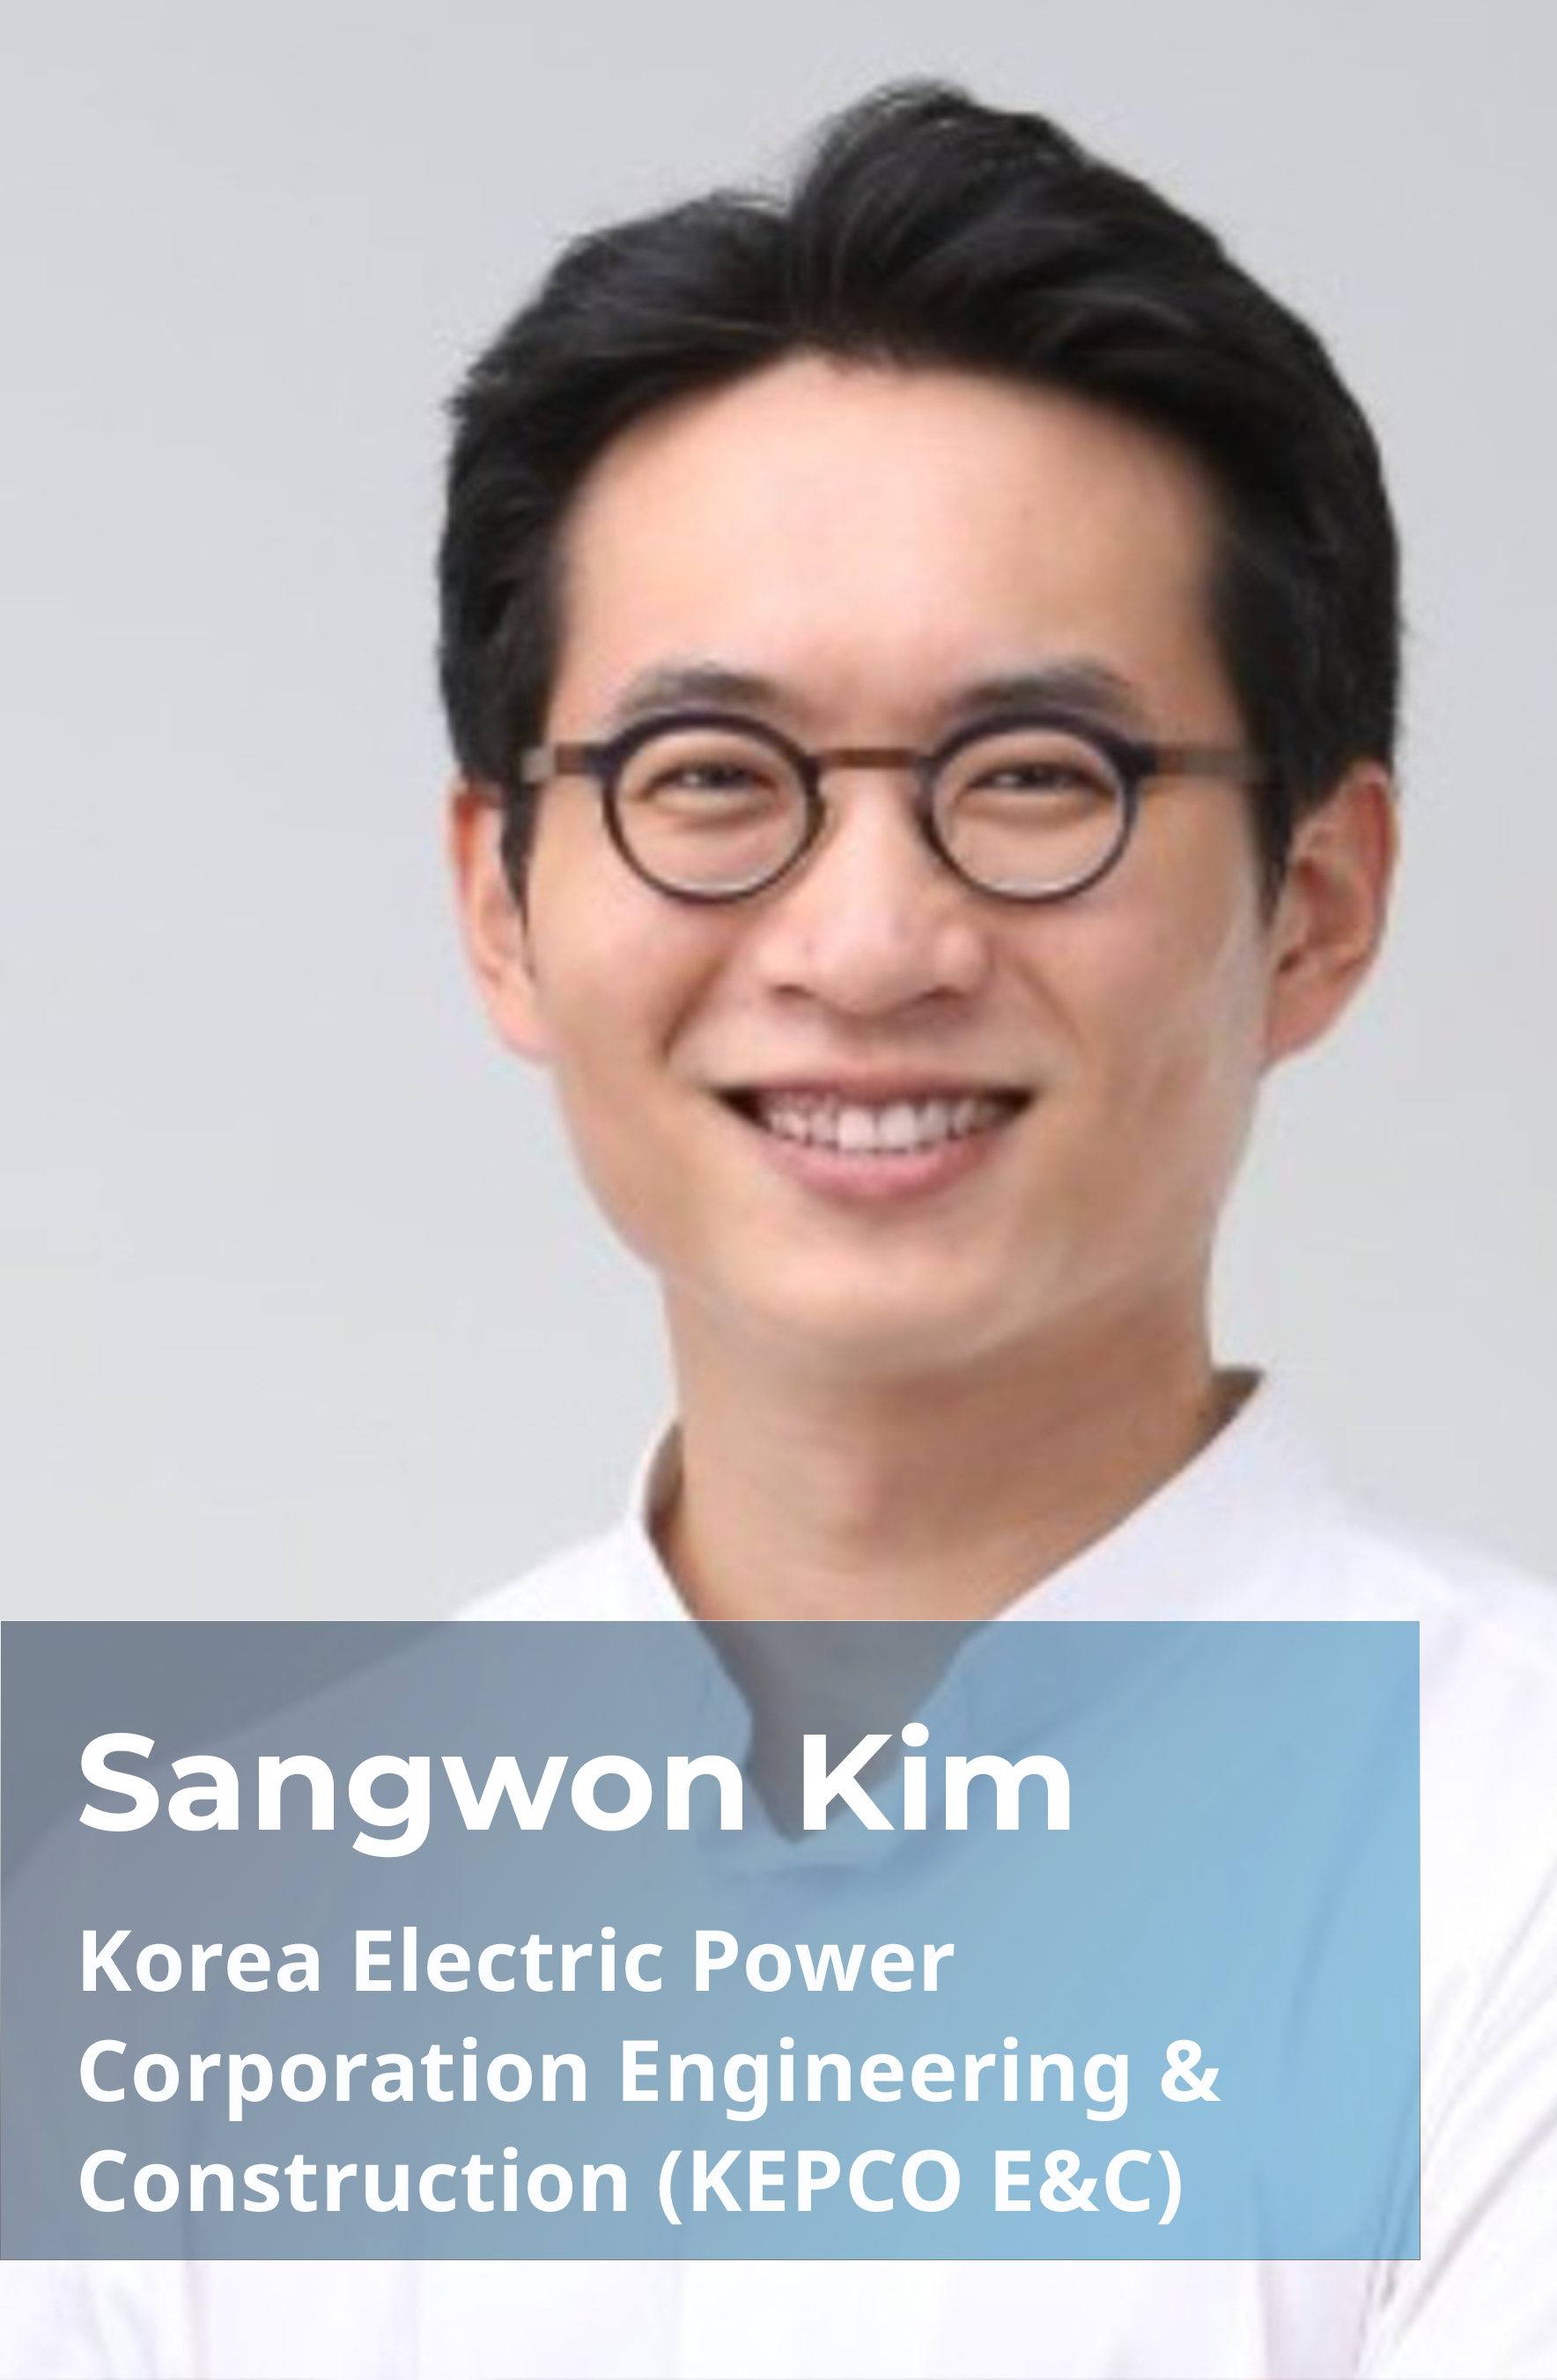 Sangwon Kim